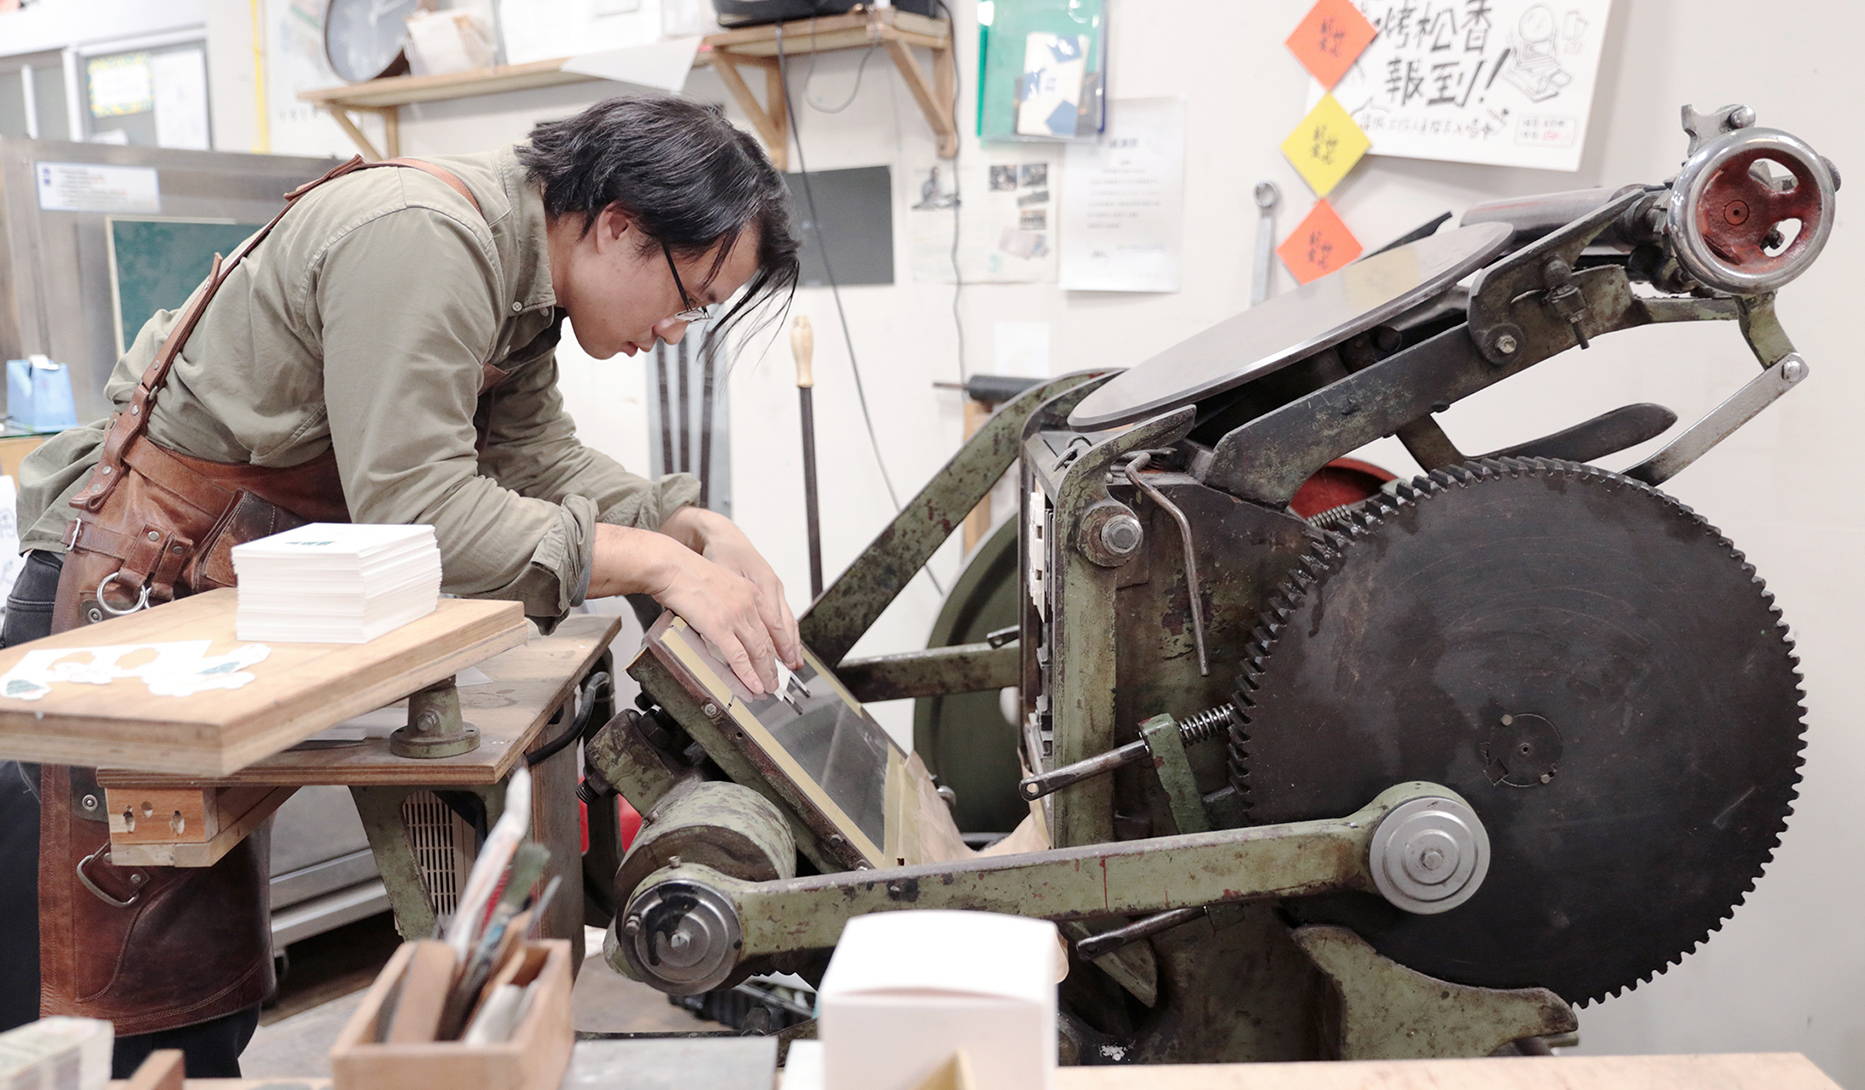 工藝探訪「凸版印刷」：壓印時間凹痕技藝的時分印刷– 土屋鞄製造所